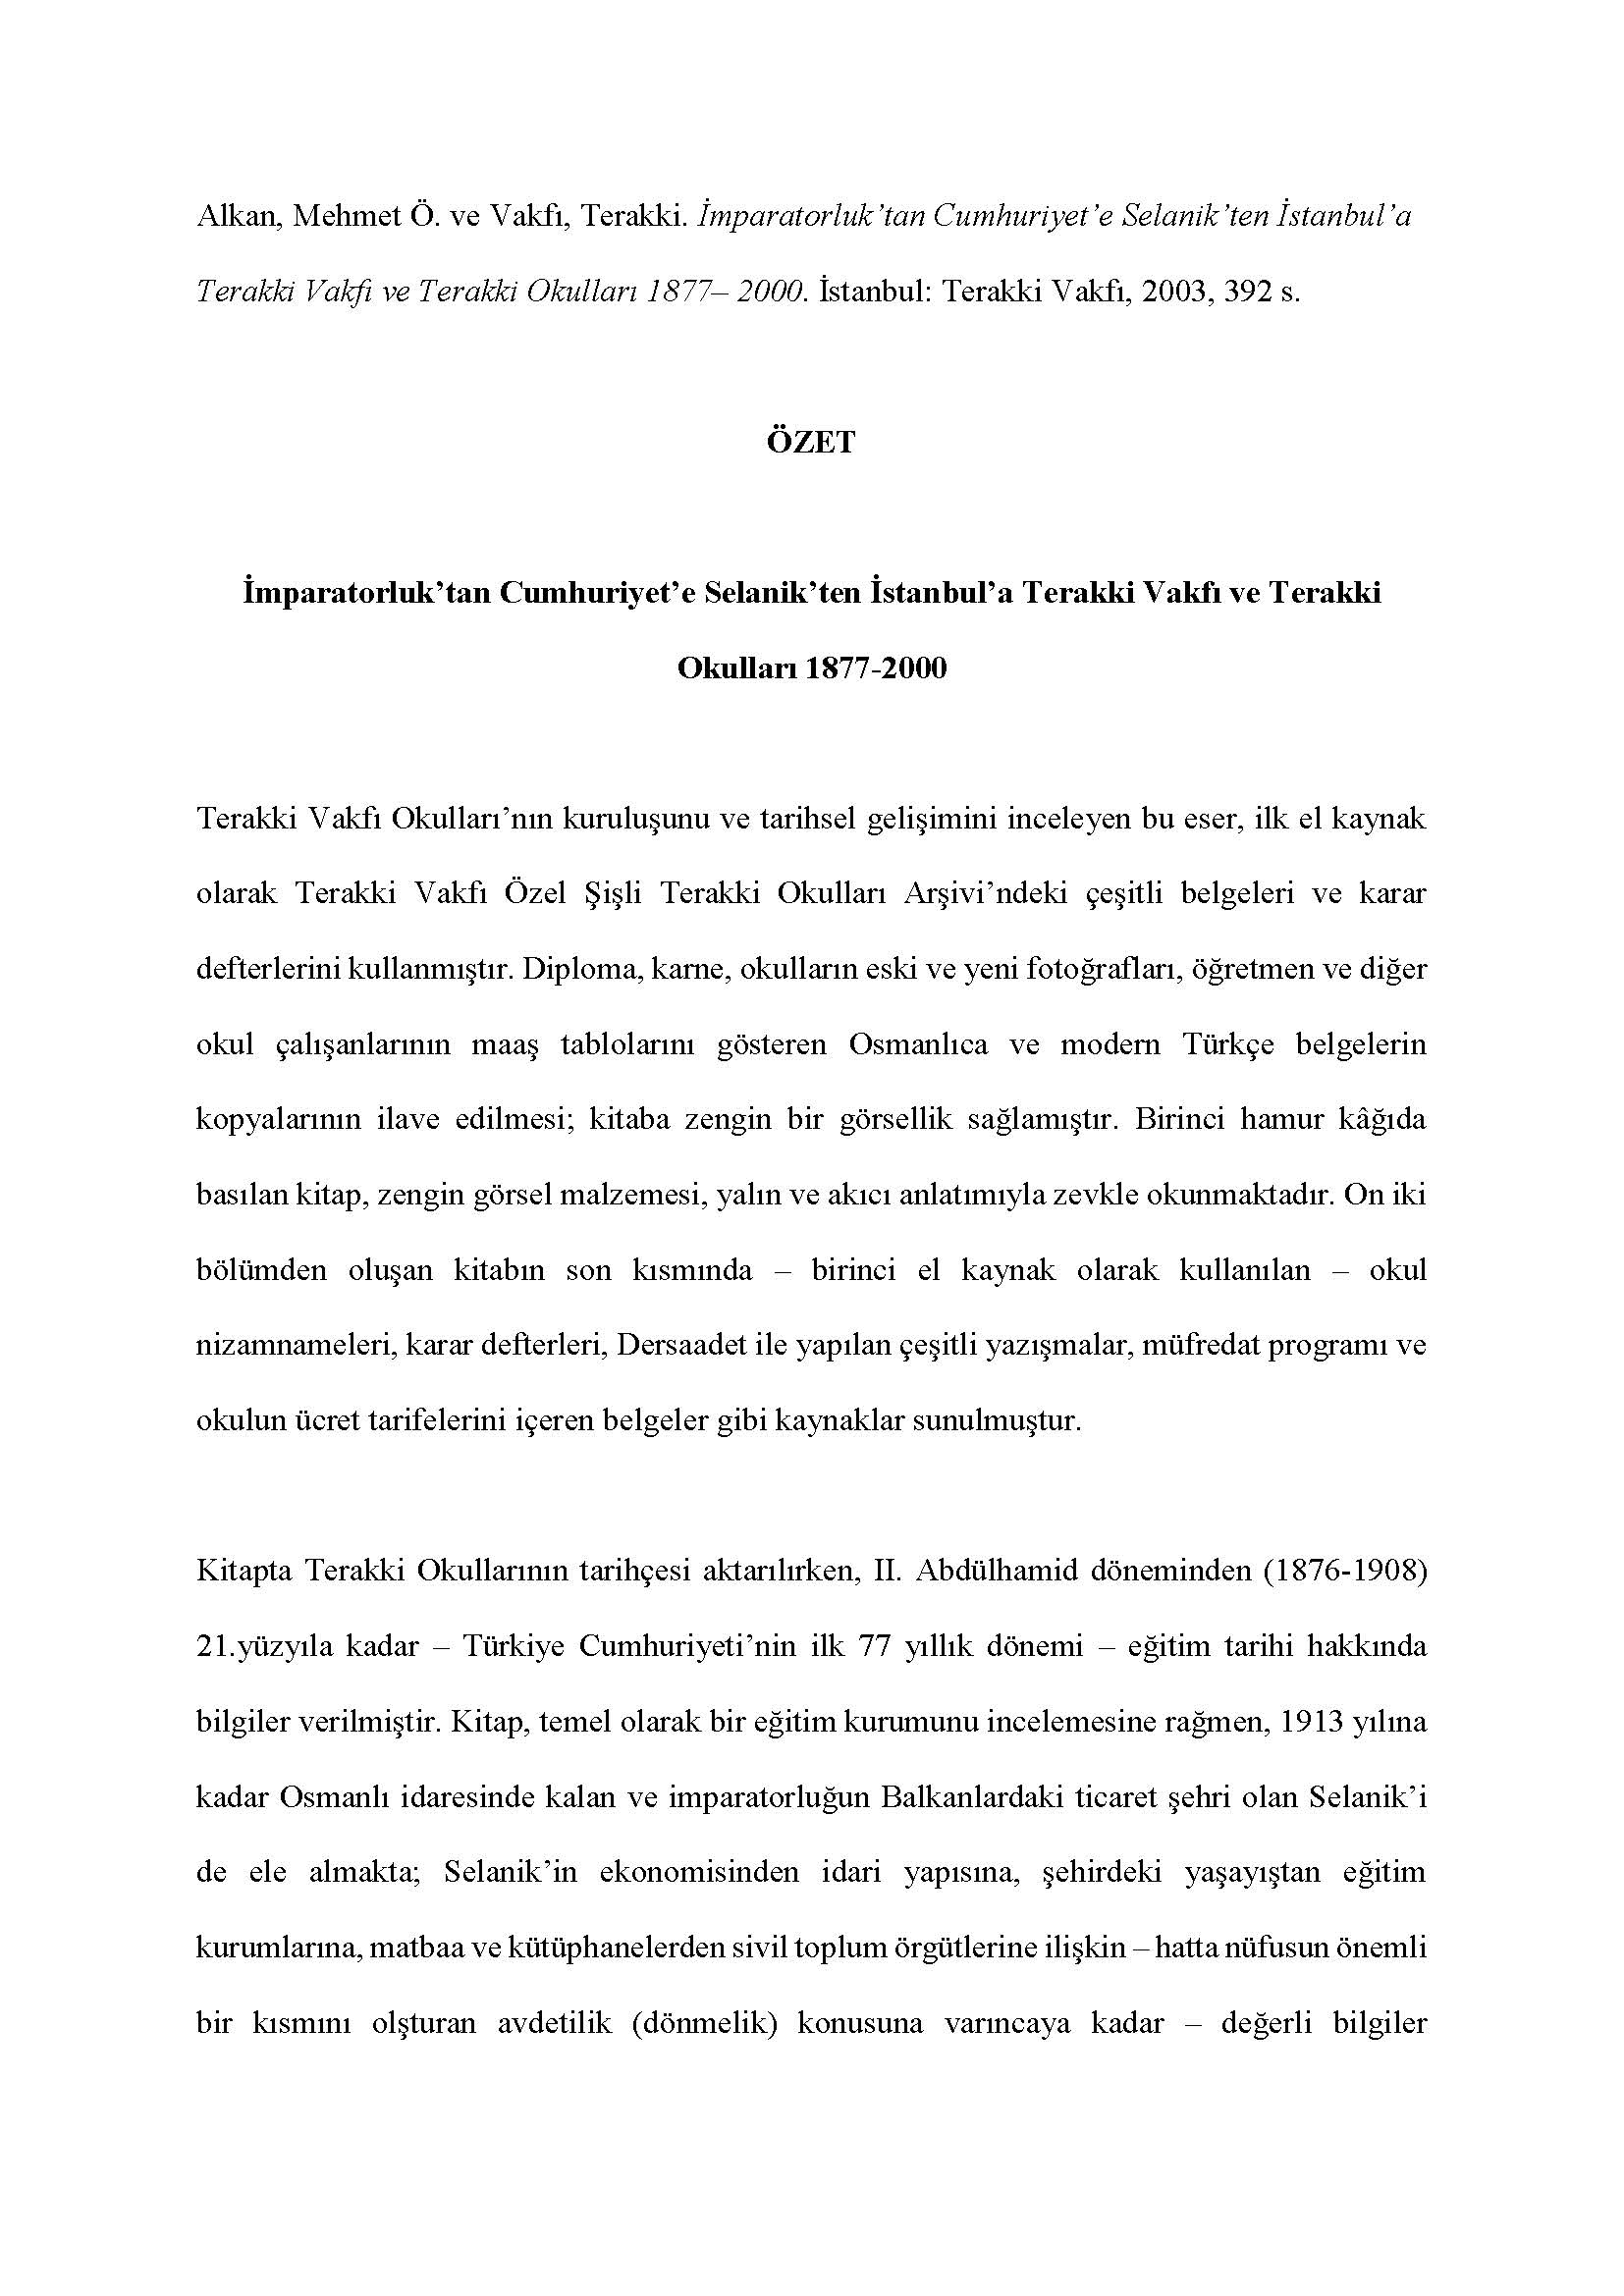  Terakki Vakfı - <div><br></div><div><div>Alkan, Mehmet Ö. ve Vakfı, Terakki. İmparatorluk’tan Cumhuriyet’e Selanik’ten İstanbul’a Terakki Vakfı ve Terakki Okulları 1877– 2000. İstanbul: Terakki Vakfı, 2003, 392 s.</div><div><br></div><div style="text-align: center; "><span style="font-weight: bold;">ÖZET</span></div><div style="text-align: center; "><span style="font-weight: bold;"><br></span></div><div style="text-align: center; "><span style="font-weight: bold;">İmparatorluk’tan Cumhuriyet’e Selanik’ten İstanbul’a Terakki Vakfı ve Terakki Okulları 1877-2000</span></div><div><br></div><div>Terakki Vakfı Okulları’nın kuruluşunu ve tarihsel gelişimini inceleyen bu eser, ilk el kaynak olarak Terakki Vakfı Özel Şişli Terakki Okulları Arşivi’ndeki çeşitli belgeleri ve karar defterlerini kullanmıştır. Diploma, karne, okulların eski ve yeni fotoğrafları, öğretmen ve diğer okul çalışanlarının maaş tablolarını gösteren Osmanlıca ve modern Türkçe belgelerin kopyalarının ilave edilmesi; kitaba zengin bir görsellik sağlamıştır. Birinci hamur kâğıda basılan kitap, zengin görsel malzemesi, yalın ve akıcı anlatımıyla zevkle okunmaktadır. On iki bölümden oluşan kitabın son kısmında – birinci el kaynak olarak kullanılan – okul nizamnameleri, karar defterleri, Dersaadet ile yapılan çeşitli yazışmalar, müfredat programı ve okulun ücret tarifelerini içeren belgeler gibi kaynaklar sunulmuştur.</div><div><br></div><div>Kitapta Terakki Okullarının tarihçesi aktarılırken, II. Abdülhamid döneminden (1876-1908) 21.yüzyıla kadar – Türkiye Cumhuriyeti’nin ilk 77 yıllık dönemi – eğitim tarihi hakkında bilgiler verilmiştir. Kitap, temel olarak bir eğitim kurumunu incelemesine rağmen, 1913 yılına kadar Osmanlı idaresinde kalan ve imparatorluğun Balkanlardaki ticaret şehri olan Selanik’i de ele almakta; Selanik’in ekonomisinden idari yapısına, şehirdeki yaşayıştan eğitim kurumlarına, matbaa ve kütüphanelerden sivil toplum örgütlerine ilişkin – hatta nüfusun önemli bir kısmını olşturan avdetilik (dönmelik) konusuna varıncaya kadar – değerli bilgiler vermektedir. Kitapta Osmanlı İmparatorluğu’ndaki kritik tarihsel olaylar, kronolojik olarak anlatılmıştır: Tanzimat (1839-1876), I. Abdülhamid Dönemi (1876-1908), Balkan Savaşları (1912-1913), II. Meşrutiyet Dönemi (1908-1918) ve I. Dünya Savaşı yıllarının olumsuz etkileri gibi.</div><div><br></div><div>Yazar, Osmanlı bürokratlarının çok etnik ve dinî yapılı Osmanlı toplumunda gayrimüslim ve Müslümanlar arasında ‘Osmanlı yurttaşı’ fikrini oluşturmak ve bu fikri topluma yaymak için çeşitli din ve mezheplerden öğrencilerin beraberce okuyacakları okullar açılması çabalarına değinmiştir. II. Abdülhamid döneminde eğitimde modernleşme hareketlerinin arttığını, ama aynı zamanda da eğitimin daha dinselleşmeye başladığını, kurulan okullardan örnekler vererek belirtmiştir.</div><div><br></div><div>Yazar, Tanzimat sonrası dönemde Osmanlı Devleti’nin – imparatorluğun tarihinde ilk defa – kamusal eğitimi üstlenip ilköğretimi zorunlu hâle getirdiğini, bütün cemaatlere açık okullar kurduğunu, kız öğrencileri eğitim sistemine dâhil ettiğini, Selanik gibi ticaretin yoğun olduğu şehirlerde sivil toplum örgütlerinin de okullar açmasına izin vererek değişen toplumsal gereksinimleri karşılamaya çalıştığına dair bir analizde bulunmuştur.</div><div><br></div><div>Yazar, bu okullar grubunun taşıdığı adın, okulun amacını çok açık bir şekilde ifade ettiğine dikkat çekerek ilk Terakki okulunun nasıl kurulduğunu ve nasıl geliştiğini ayrıntılı olarak aktarmıştır. İlerleme anlamına gelen ‘terakki’ kelimesinin okula ad olarak seçilmiş olması, yazara göre, okulun temel hedefinin Osmanlı Devleti’nin toplumsal gelişmeyi sağlama hedefiyle örtüştüğünün bir göstergesi olmaktadır.</div><div><br></div><div>Osmanlı modernleşme dönemi eğitim tarihini, Terakki Okulları penceresinden bakarak analiz eden bu kitap; Osmanlı eğitim tarihi hakkında akademik araştırma yapanların, aynı zamanda bu konuya ya da 19. yy. Balkan şehirlerine ilgi duyanların zevkle okuyarak faydalanabilecekleri temel bir kaynak niteliğindedir.</div><div><br></div><div>Feryal Tansuğ</div></div>